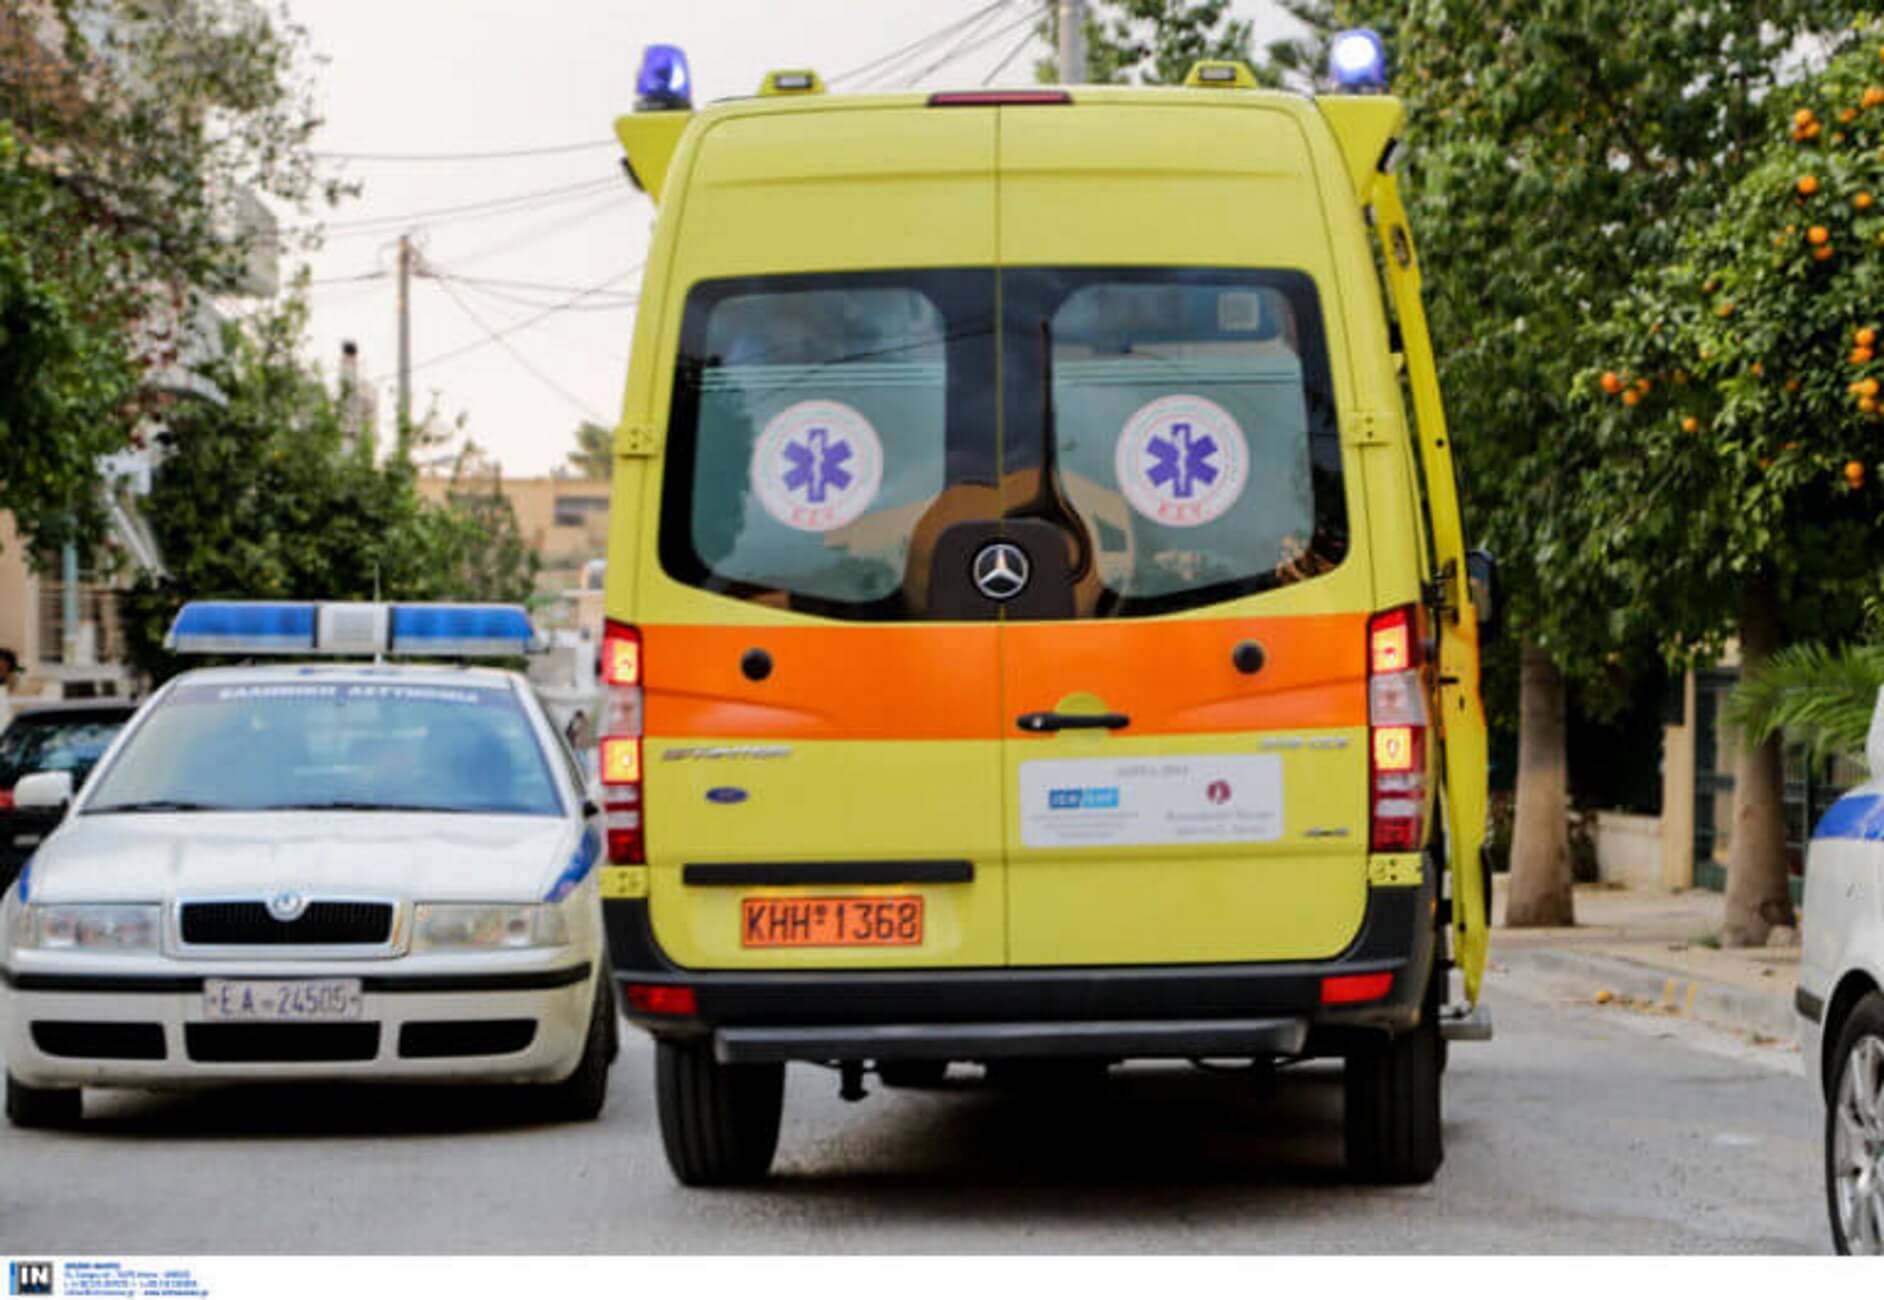 Θεσσαλονίκη: Ακόμα ένας νεκρός πεζός στην άσφαλτο – Παρασύρθηκε από αυτοκίνητο στο ύψος του νοσοκομείου Παπαγεωργίου!